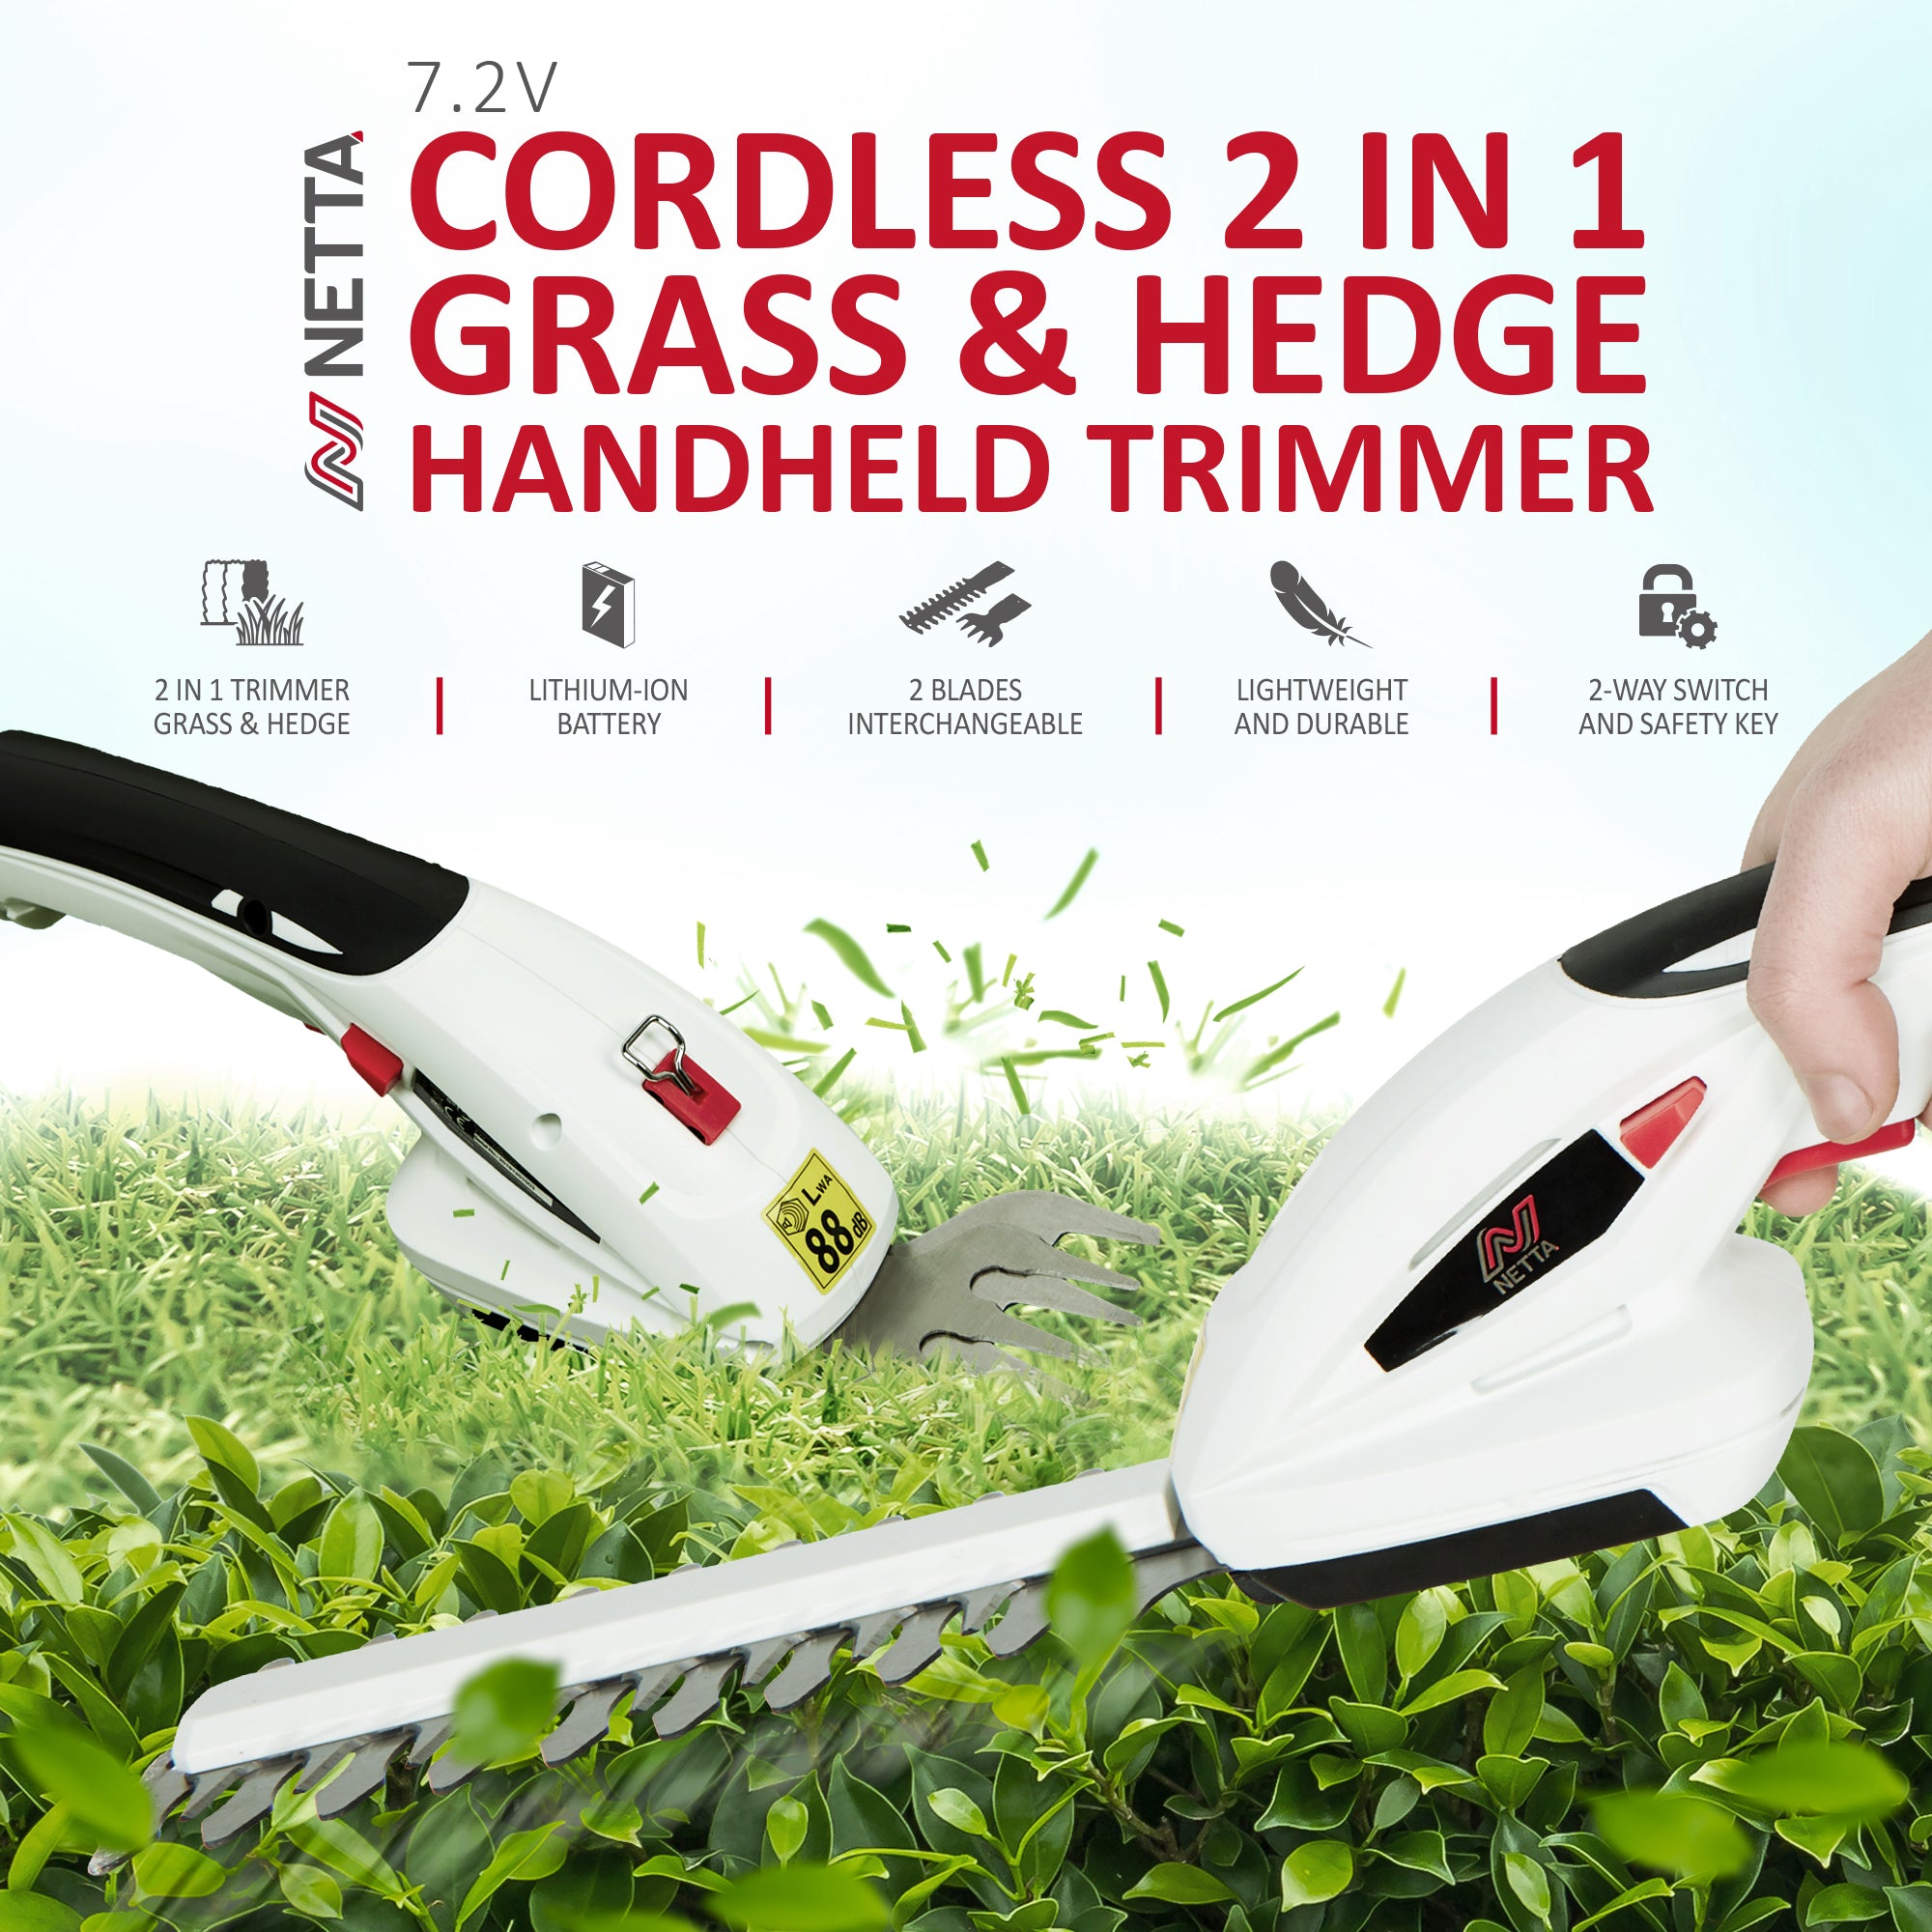 NETTA 7.2V Cordless 2 in 1 Grass & Hedge Trimmer  - Handheld